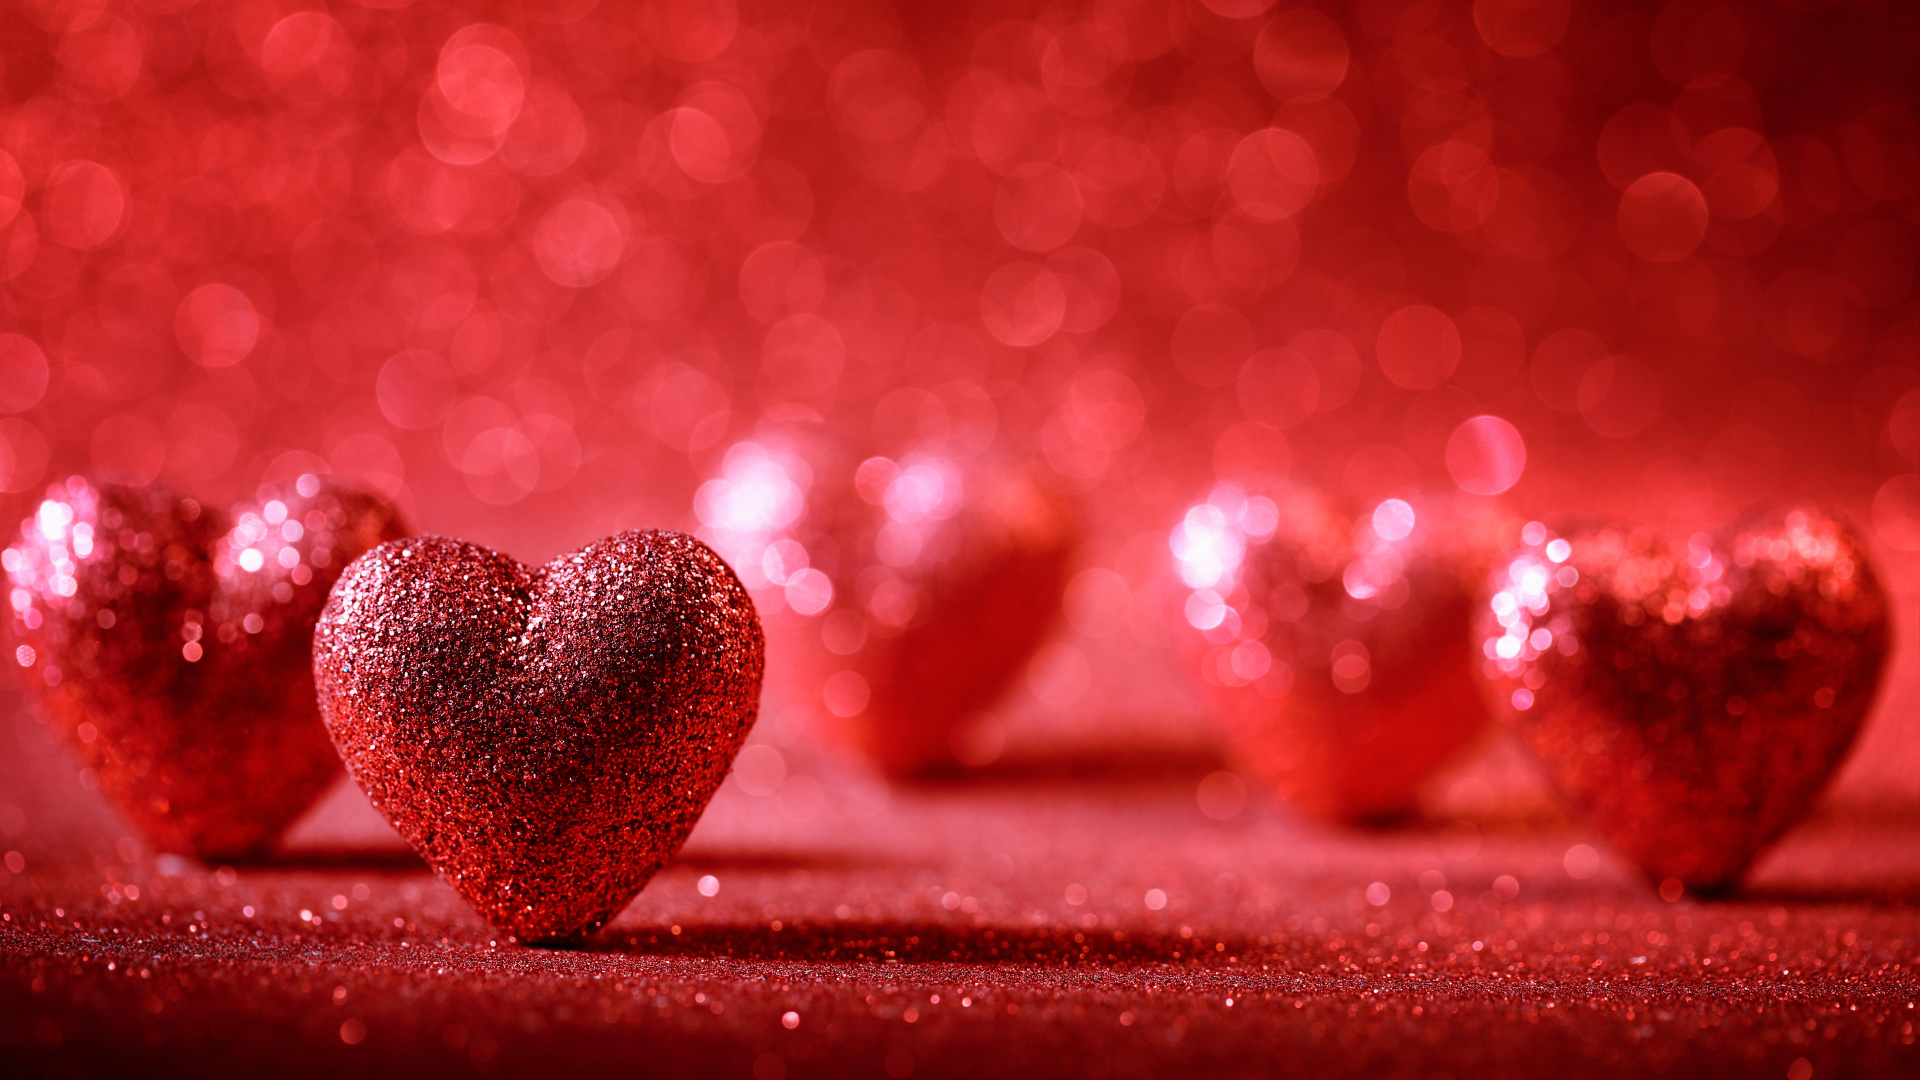 el Día de San Valentín, Coraz, Rojo, Amor, Romanticismo. Wallpaper in 1920x1080 Resolution